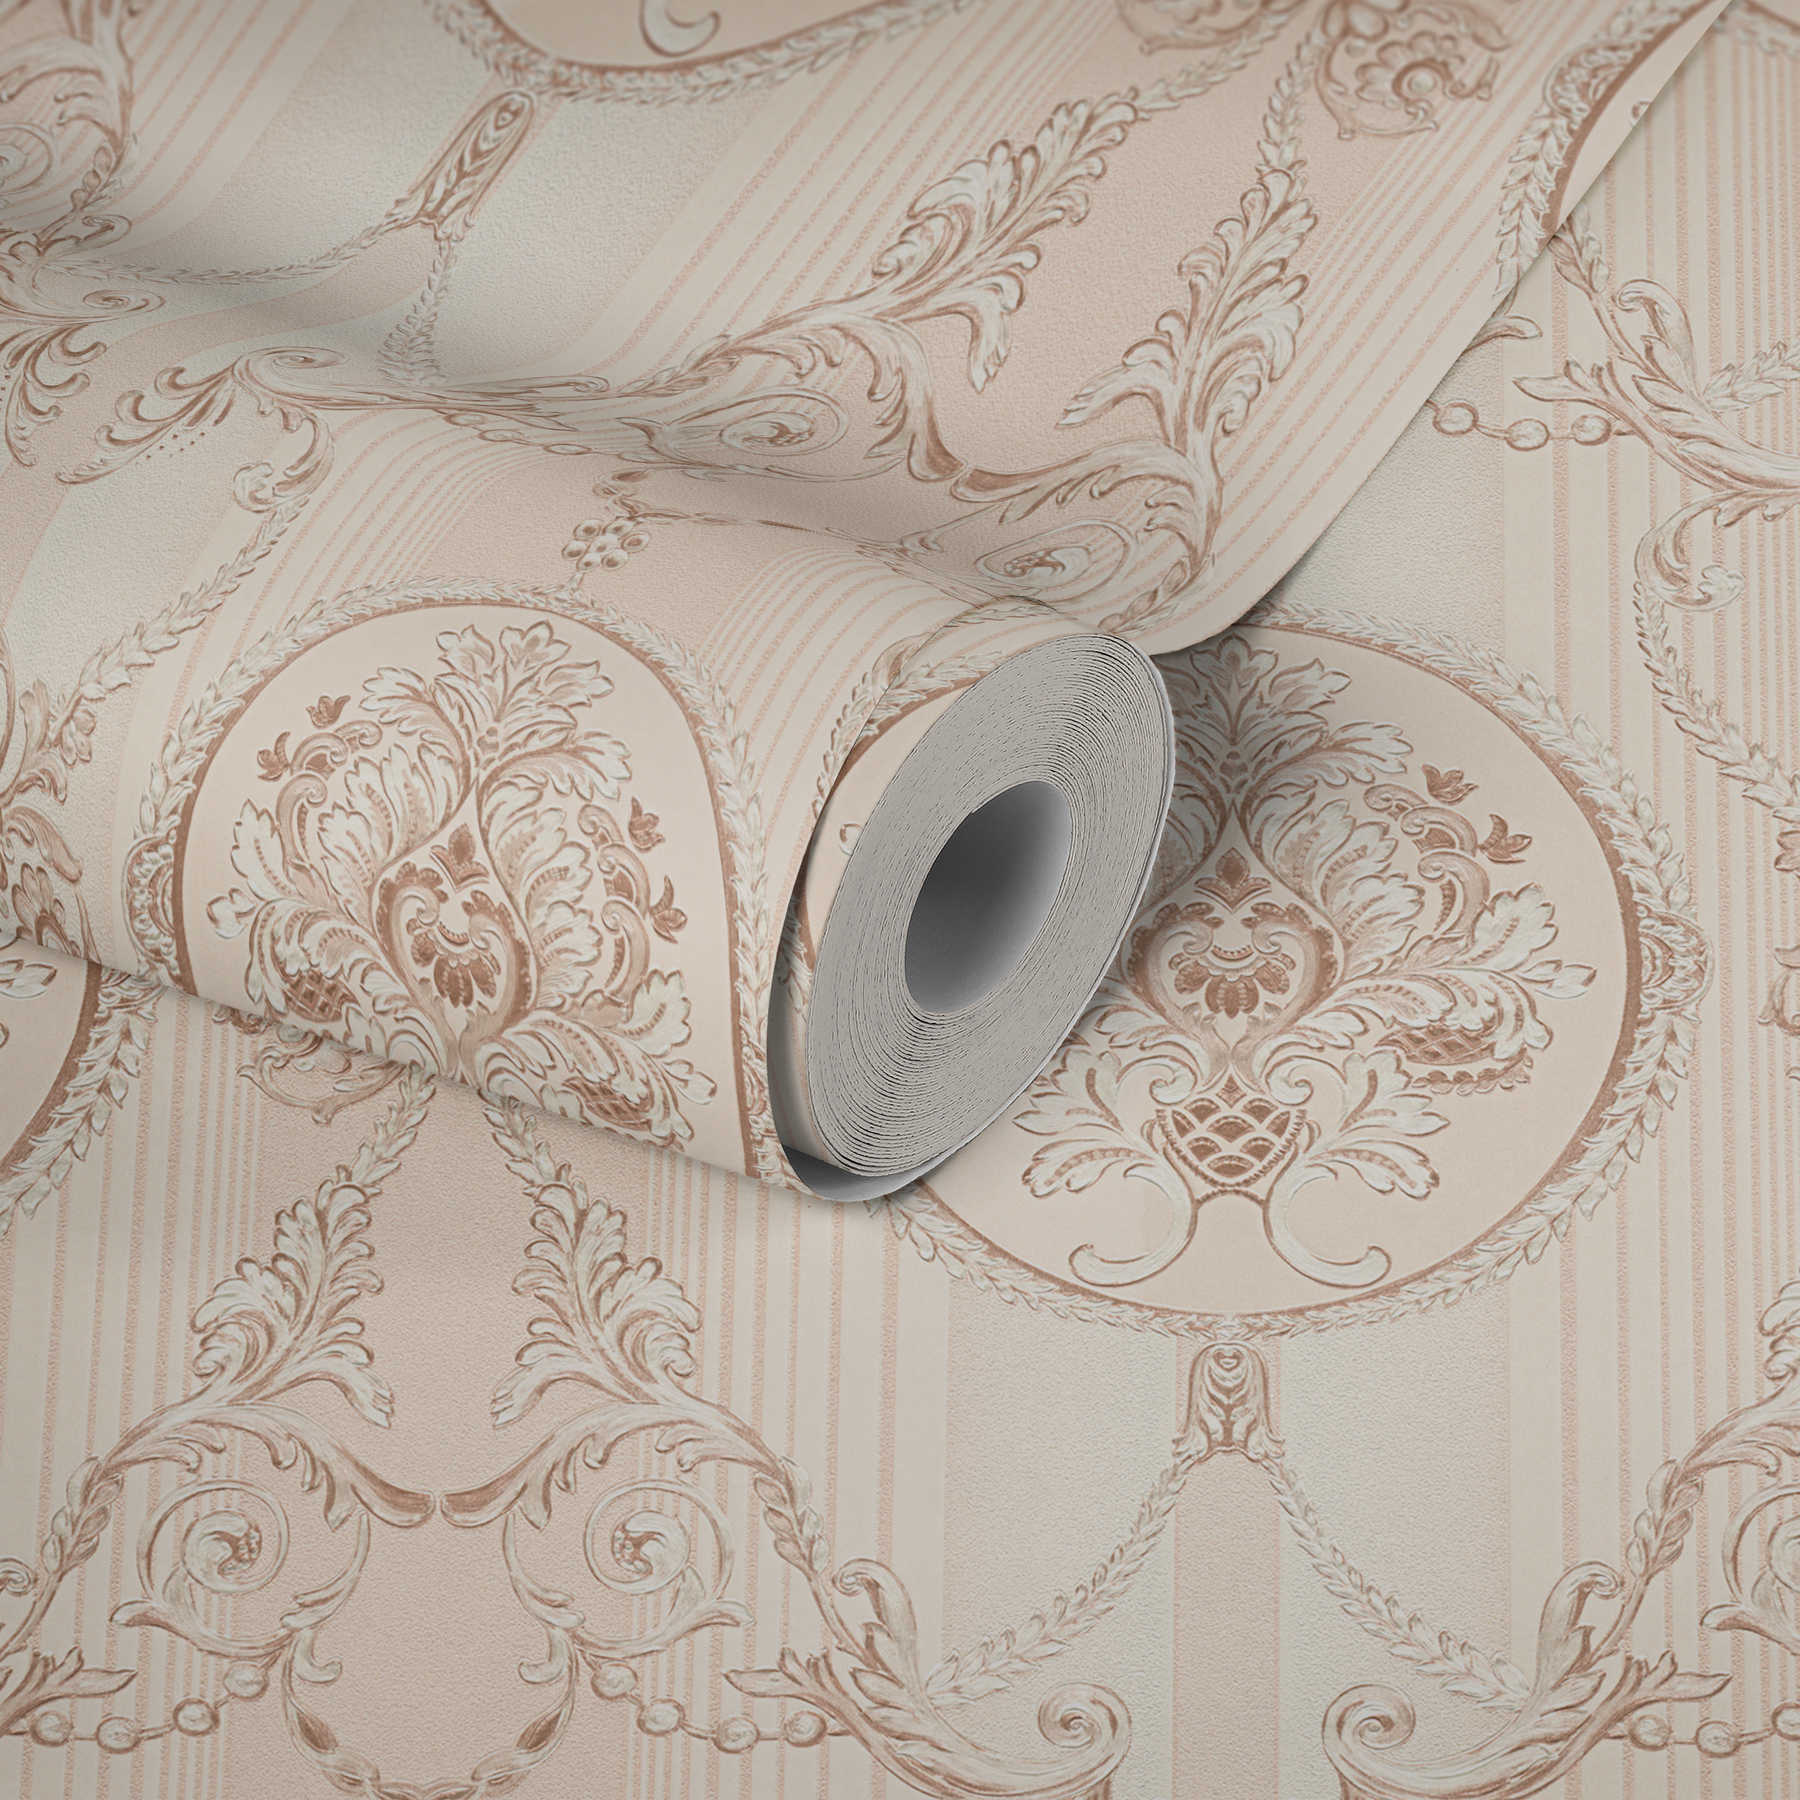             Papier peint néo-baroque avec motif ornemental & rayures - crème, rose
        